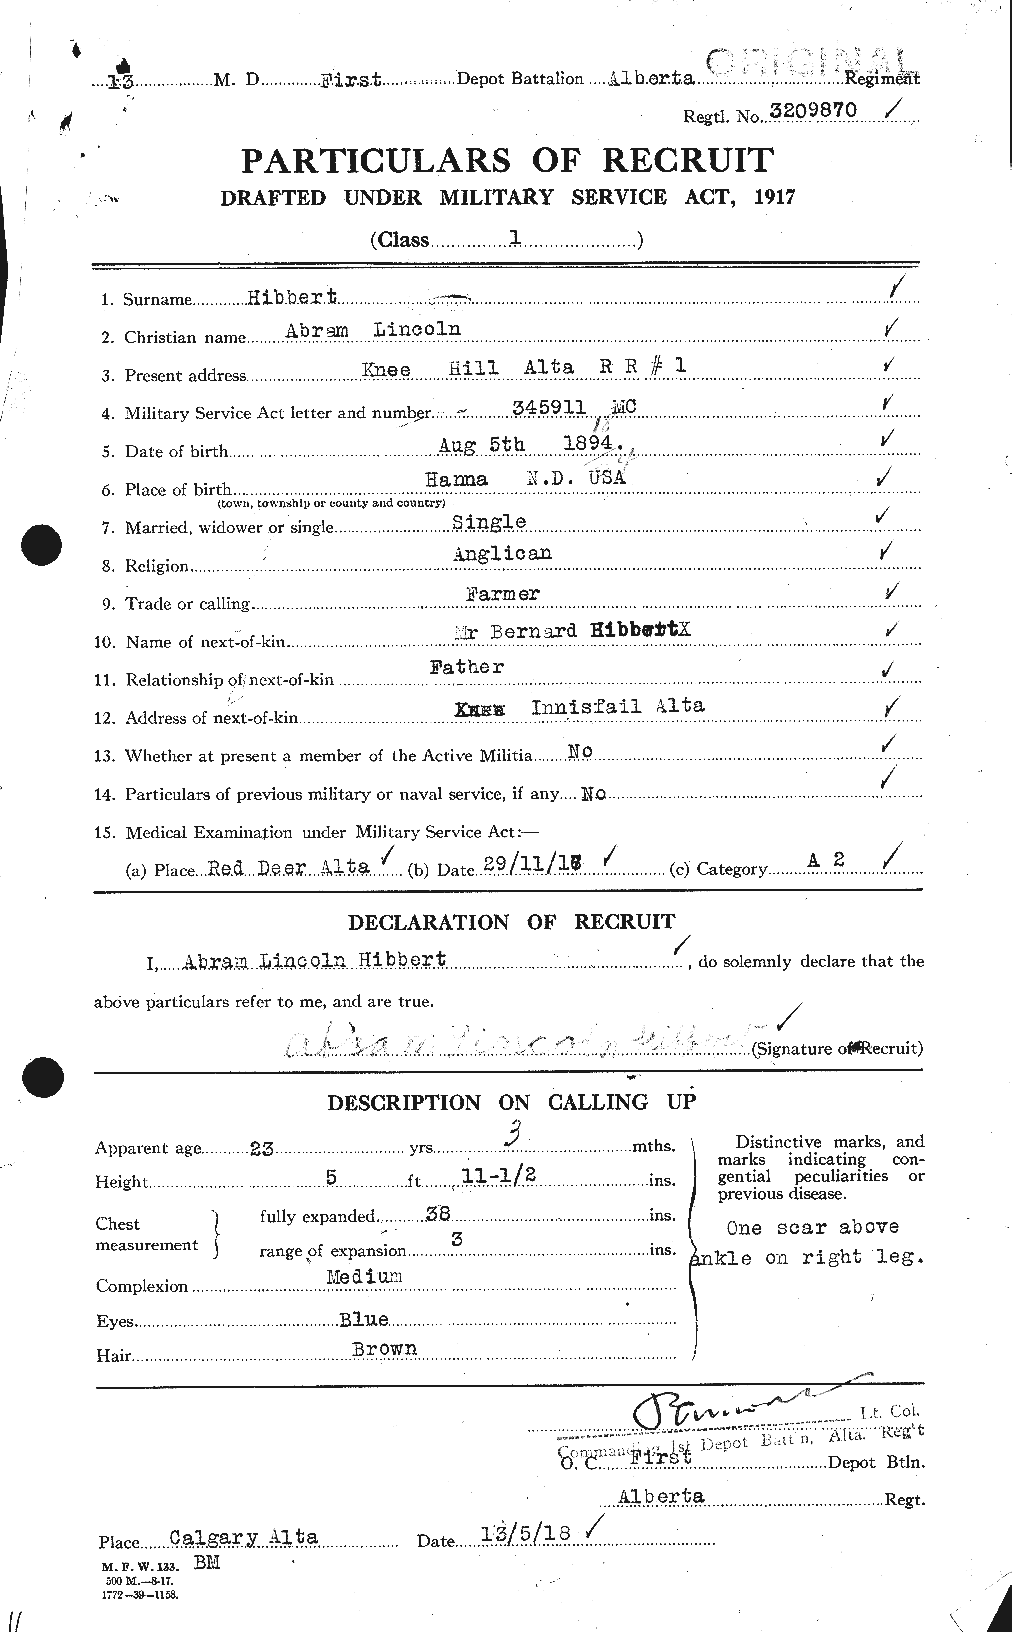 Dossiers du Personnel de la Première Guerre mondiale - CEC 396190a